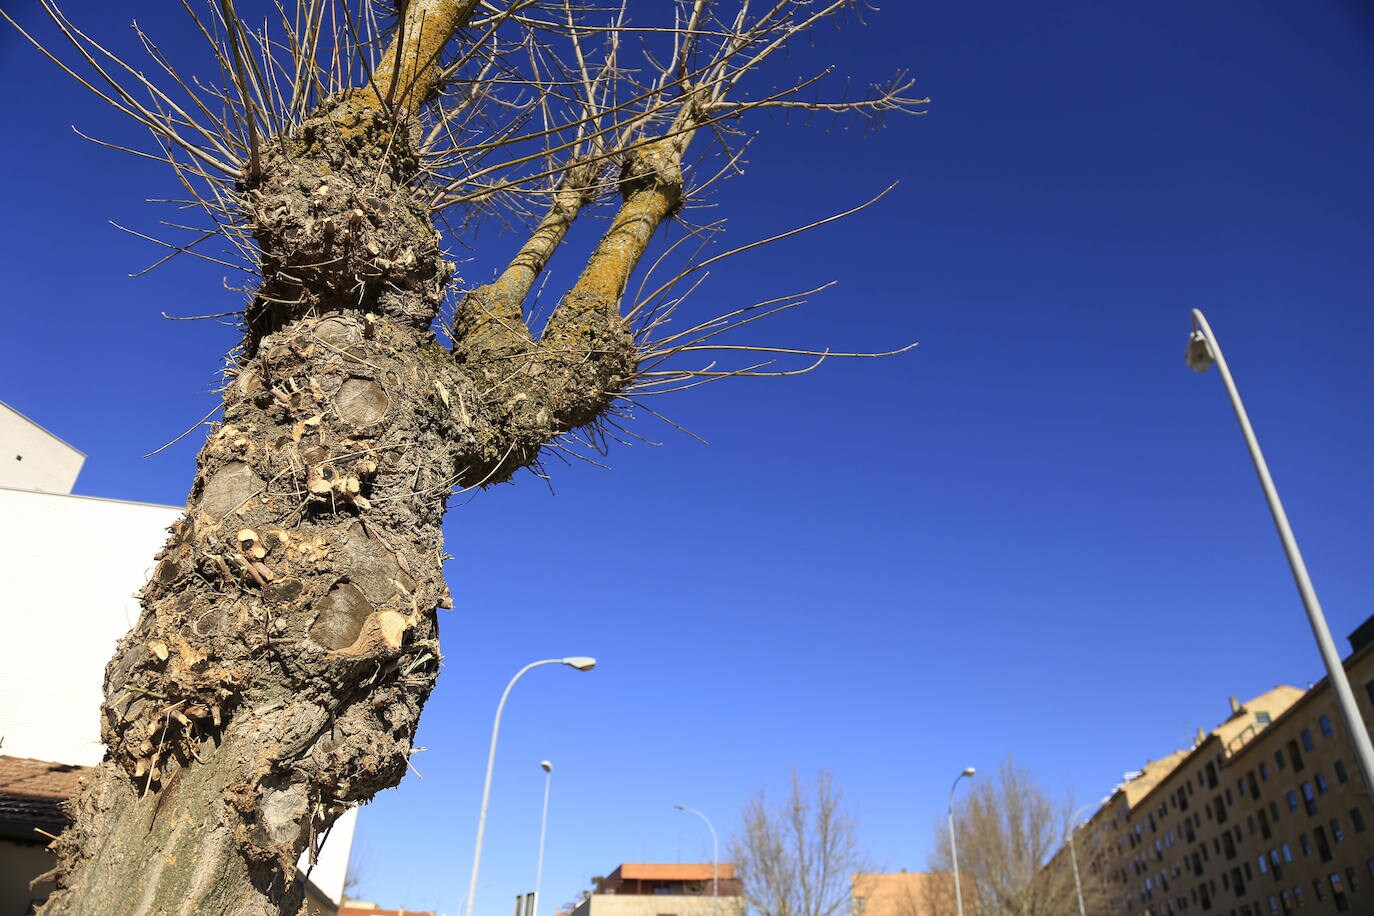 Fotos: El sistema de podas del Ayuntamiento de Salamanca cada vez despierta más recelos